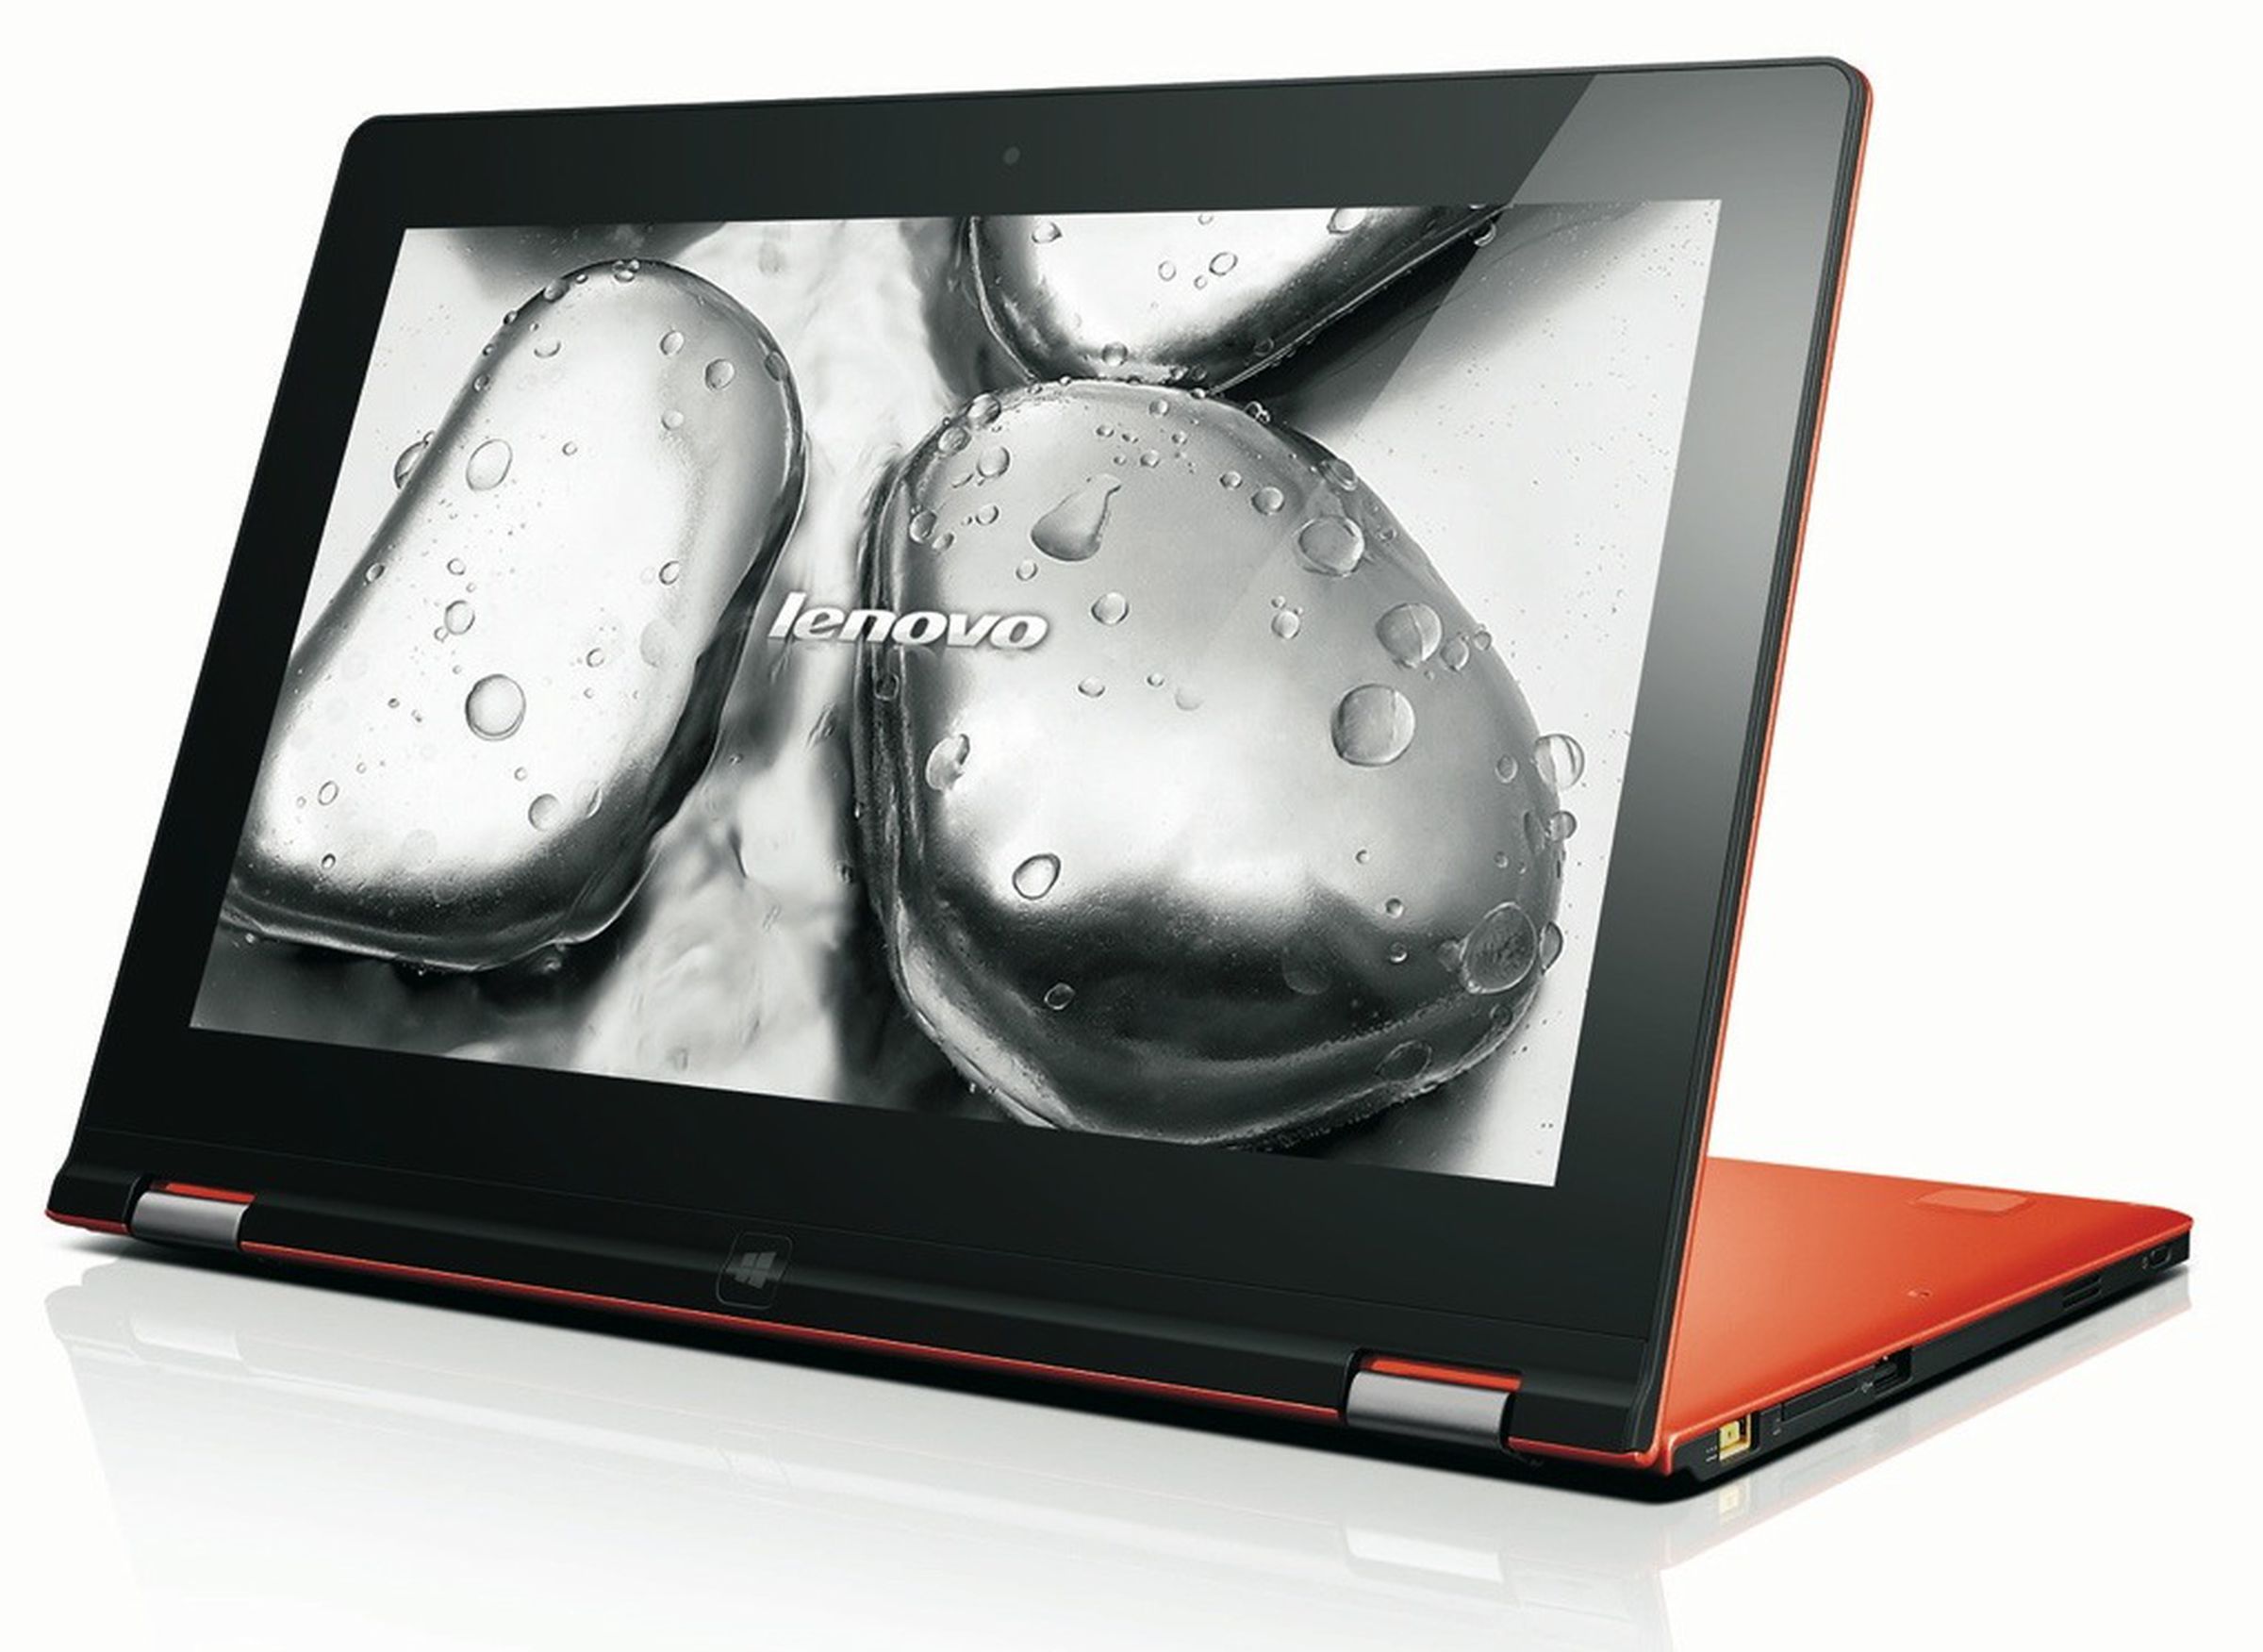 Lenovo IdeaPad Yoga 11S press pictures